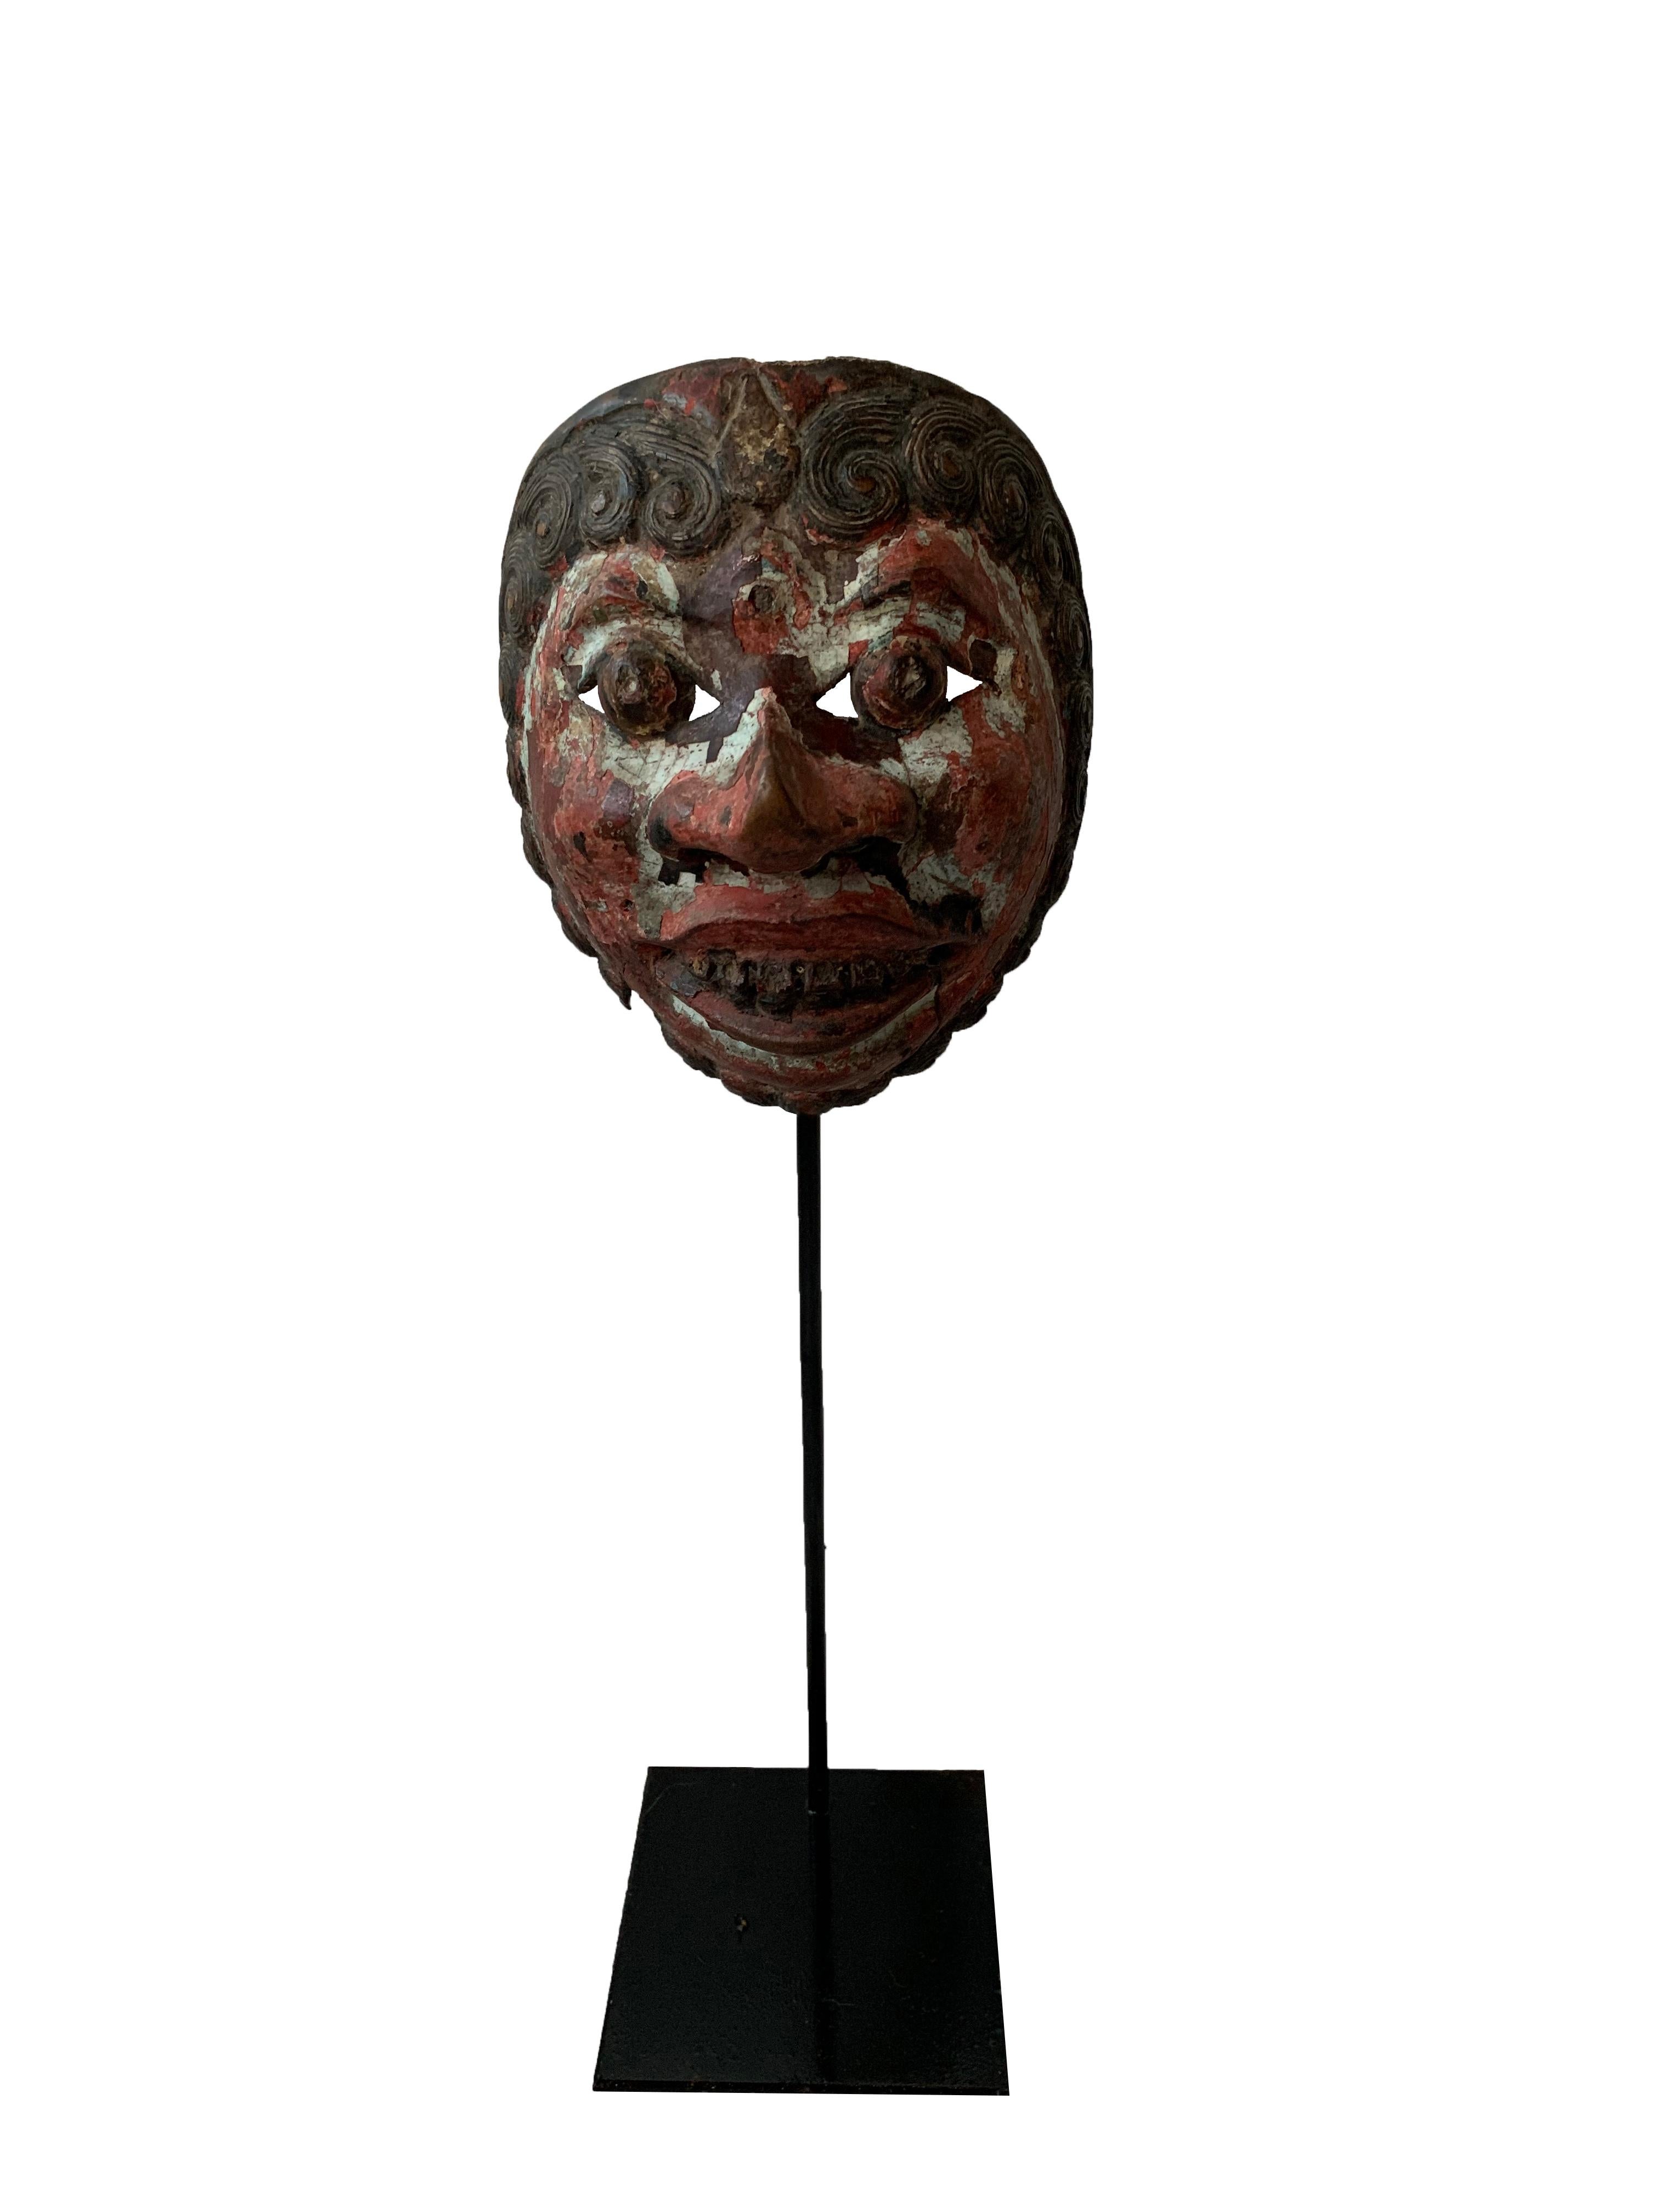 Eine sichtlich alte Maske aus dem javanischen Maskentheater 